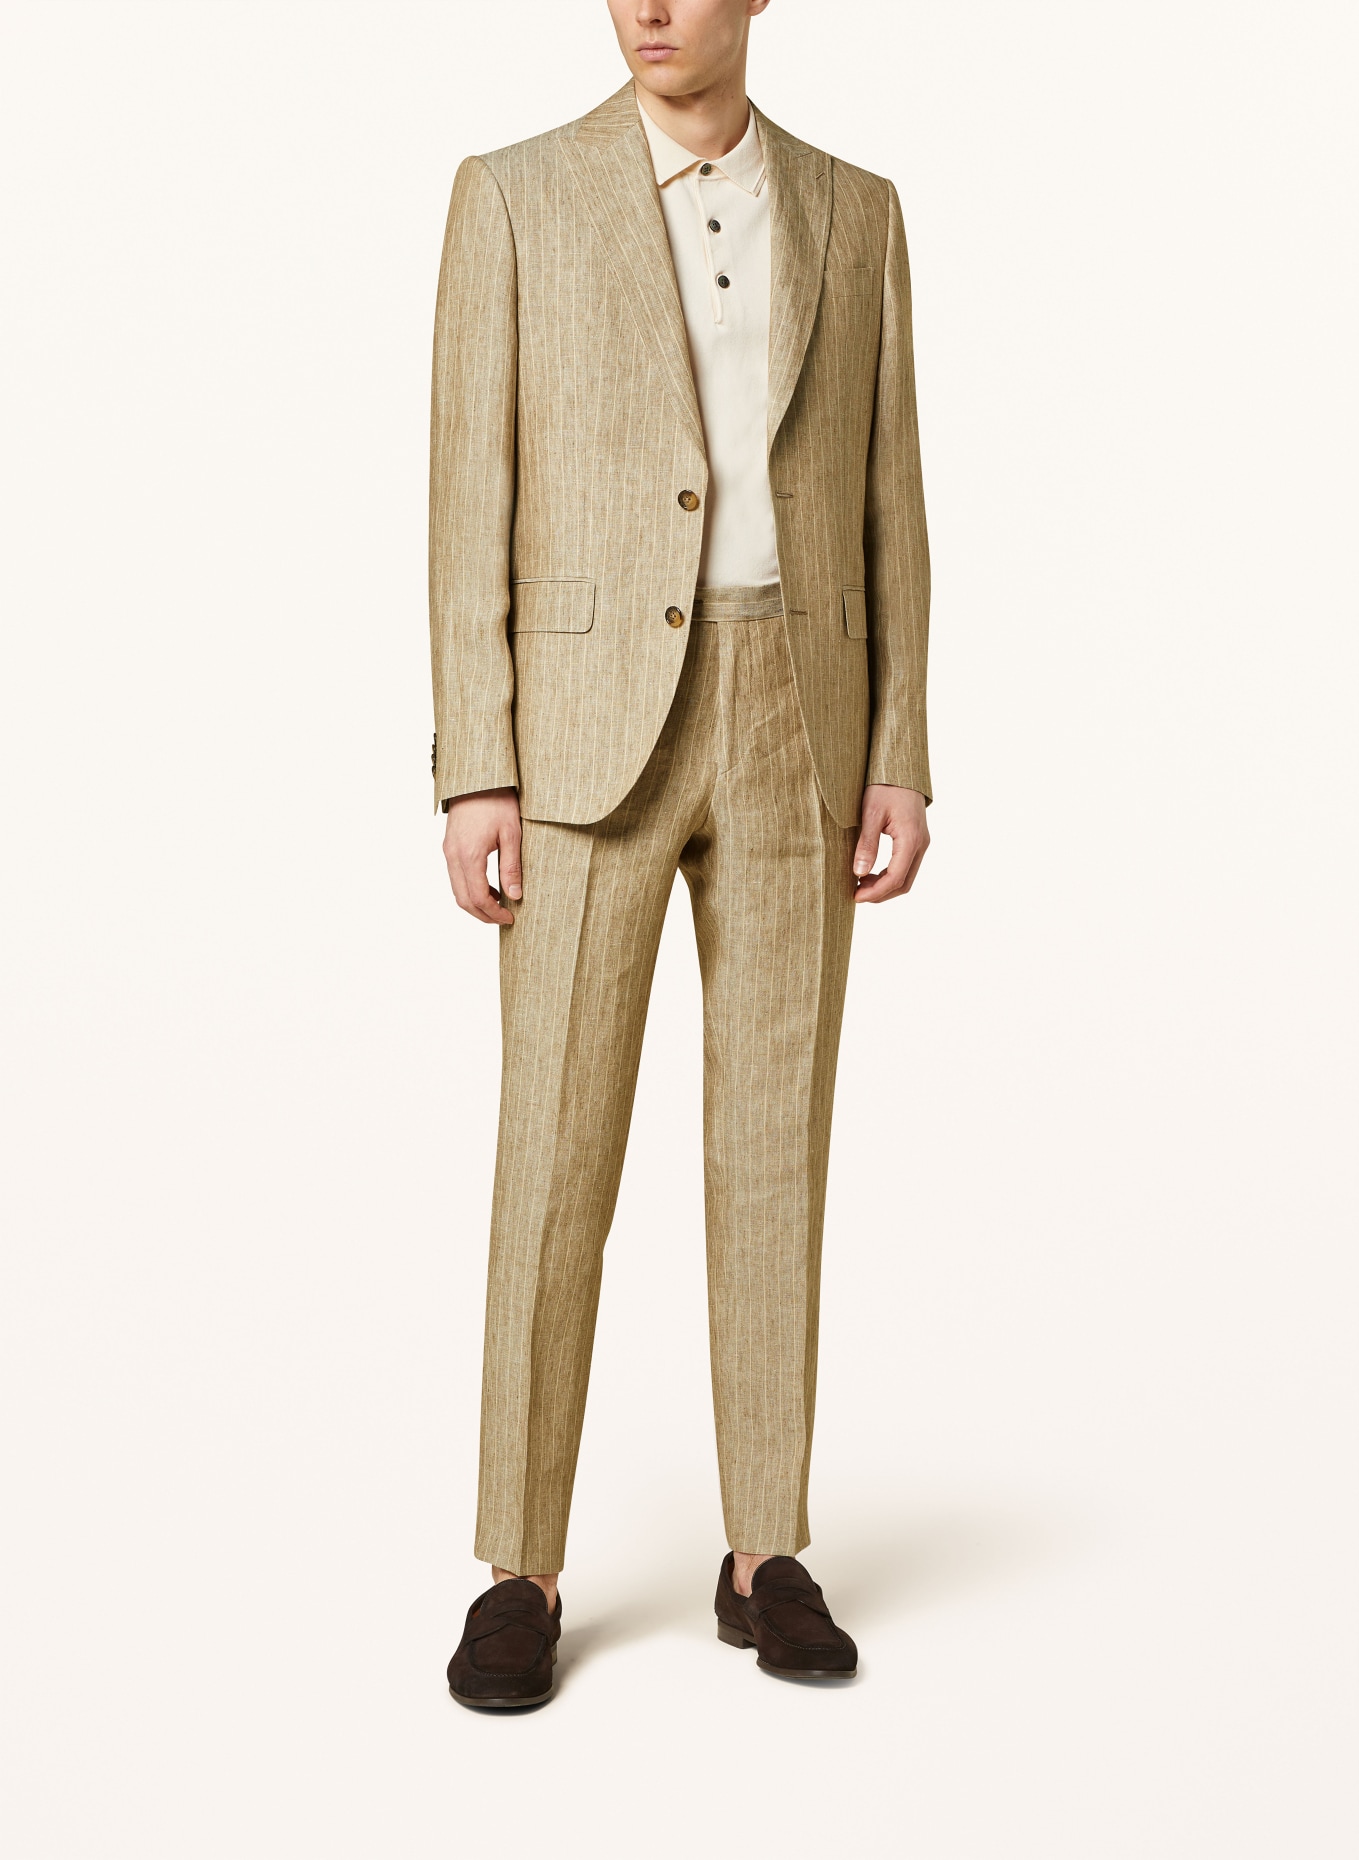 SAND COPENHAGEN Suit jacket slim fit in linen, Color: 230 dark beige (Image 2)